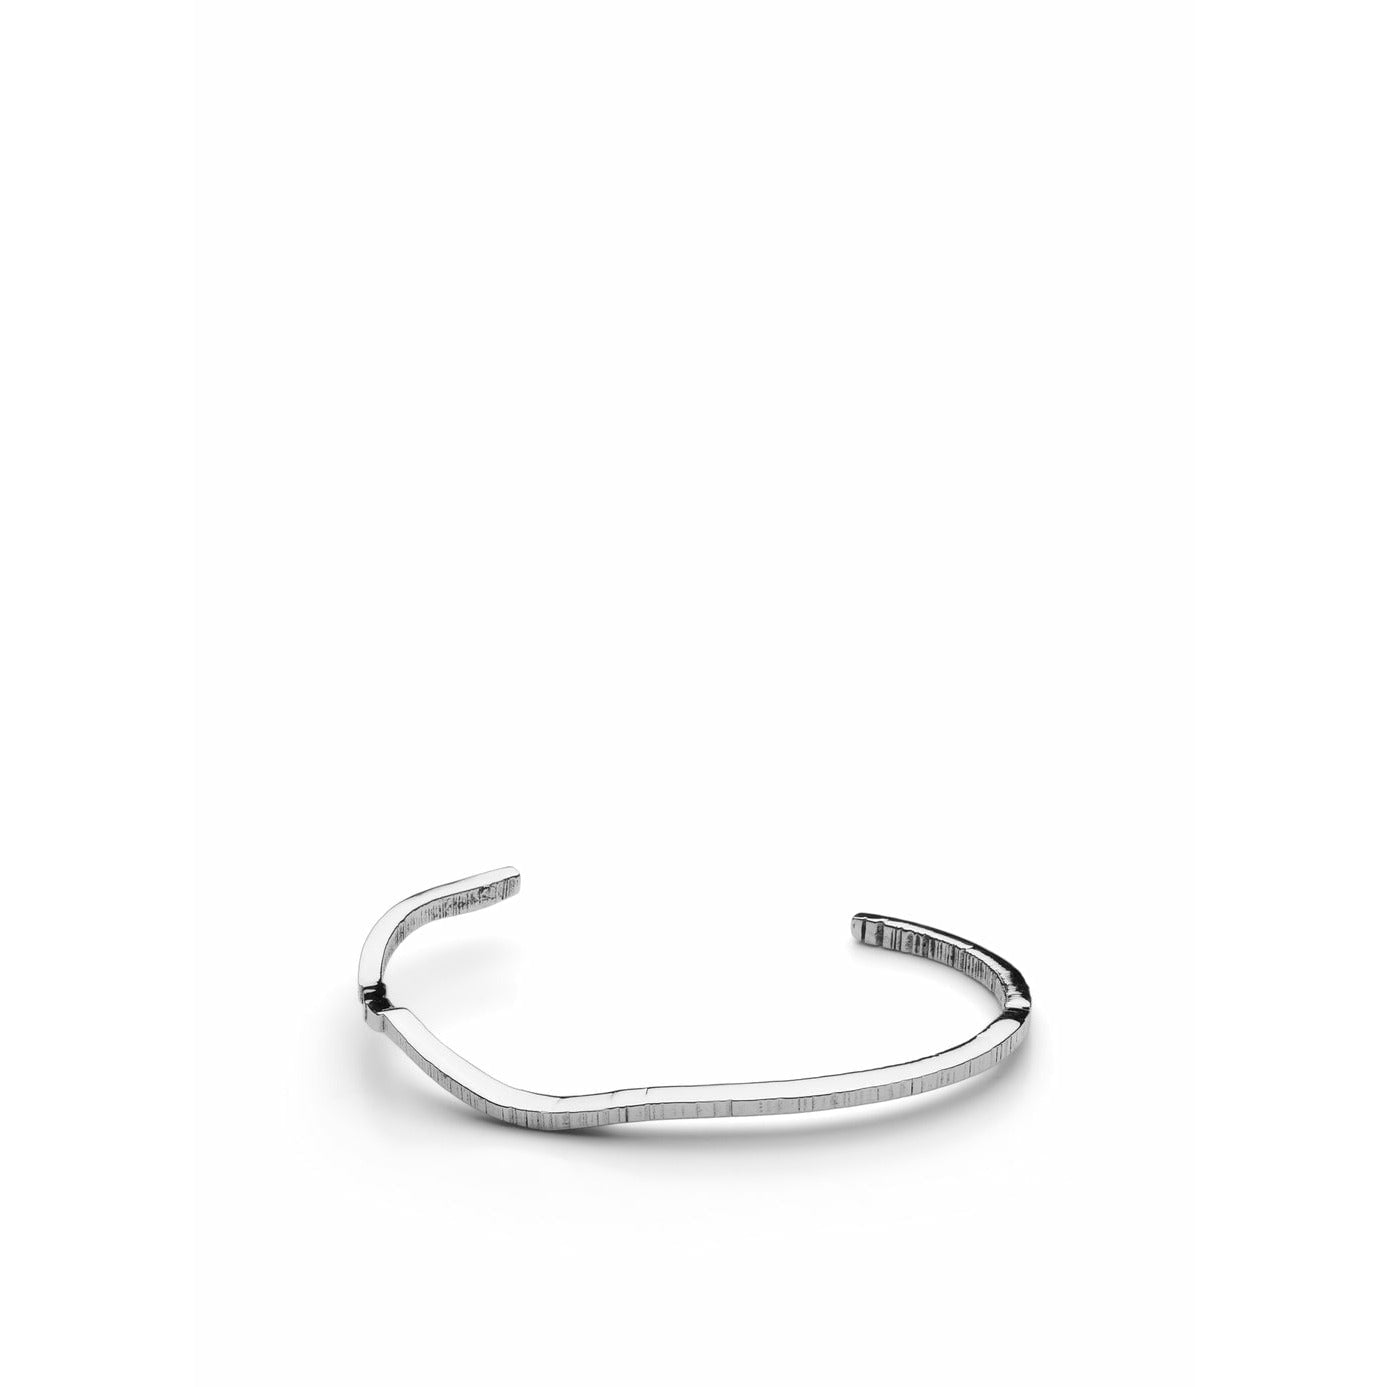 Skultuna chêne bracelet brut petit acier poli, Ø14,5 cm